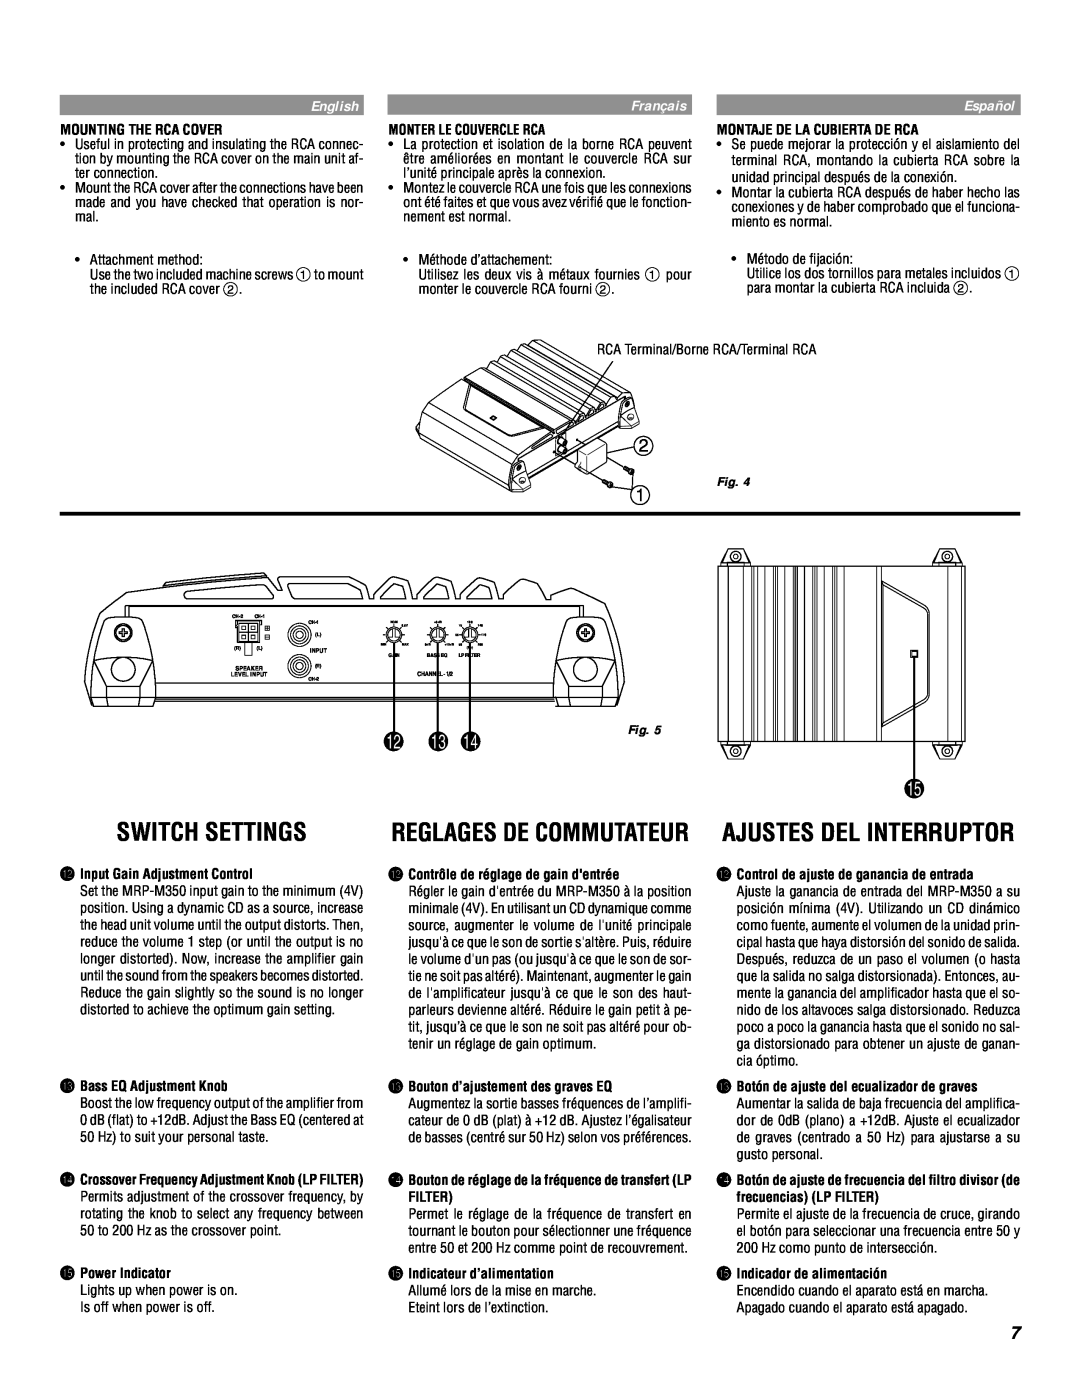 Alpine MRP-M350 owner manual Switch Settings, English, Français, Español, Çreglages De Commutateur 